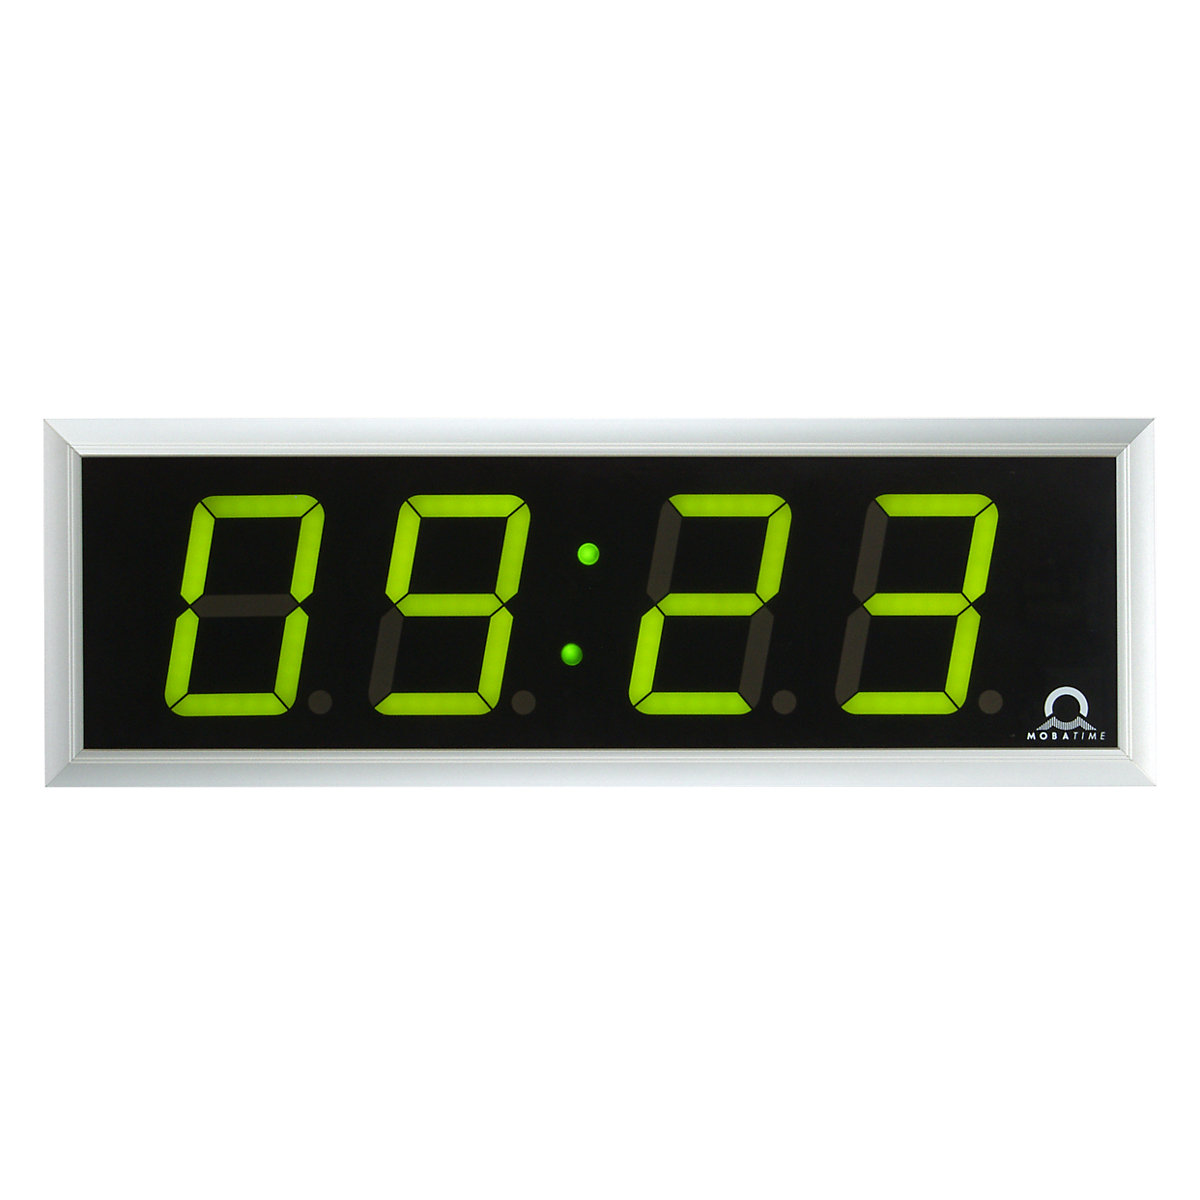 Zegar elektroniczny LED, wys. x szer. x głęb. 118 x 333 x 39 mm, srebrny, zielone diody LED-1